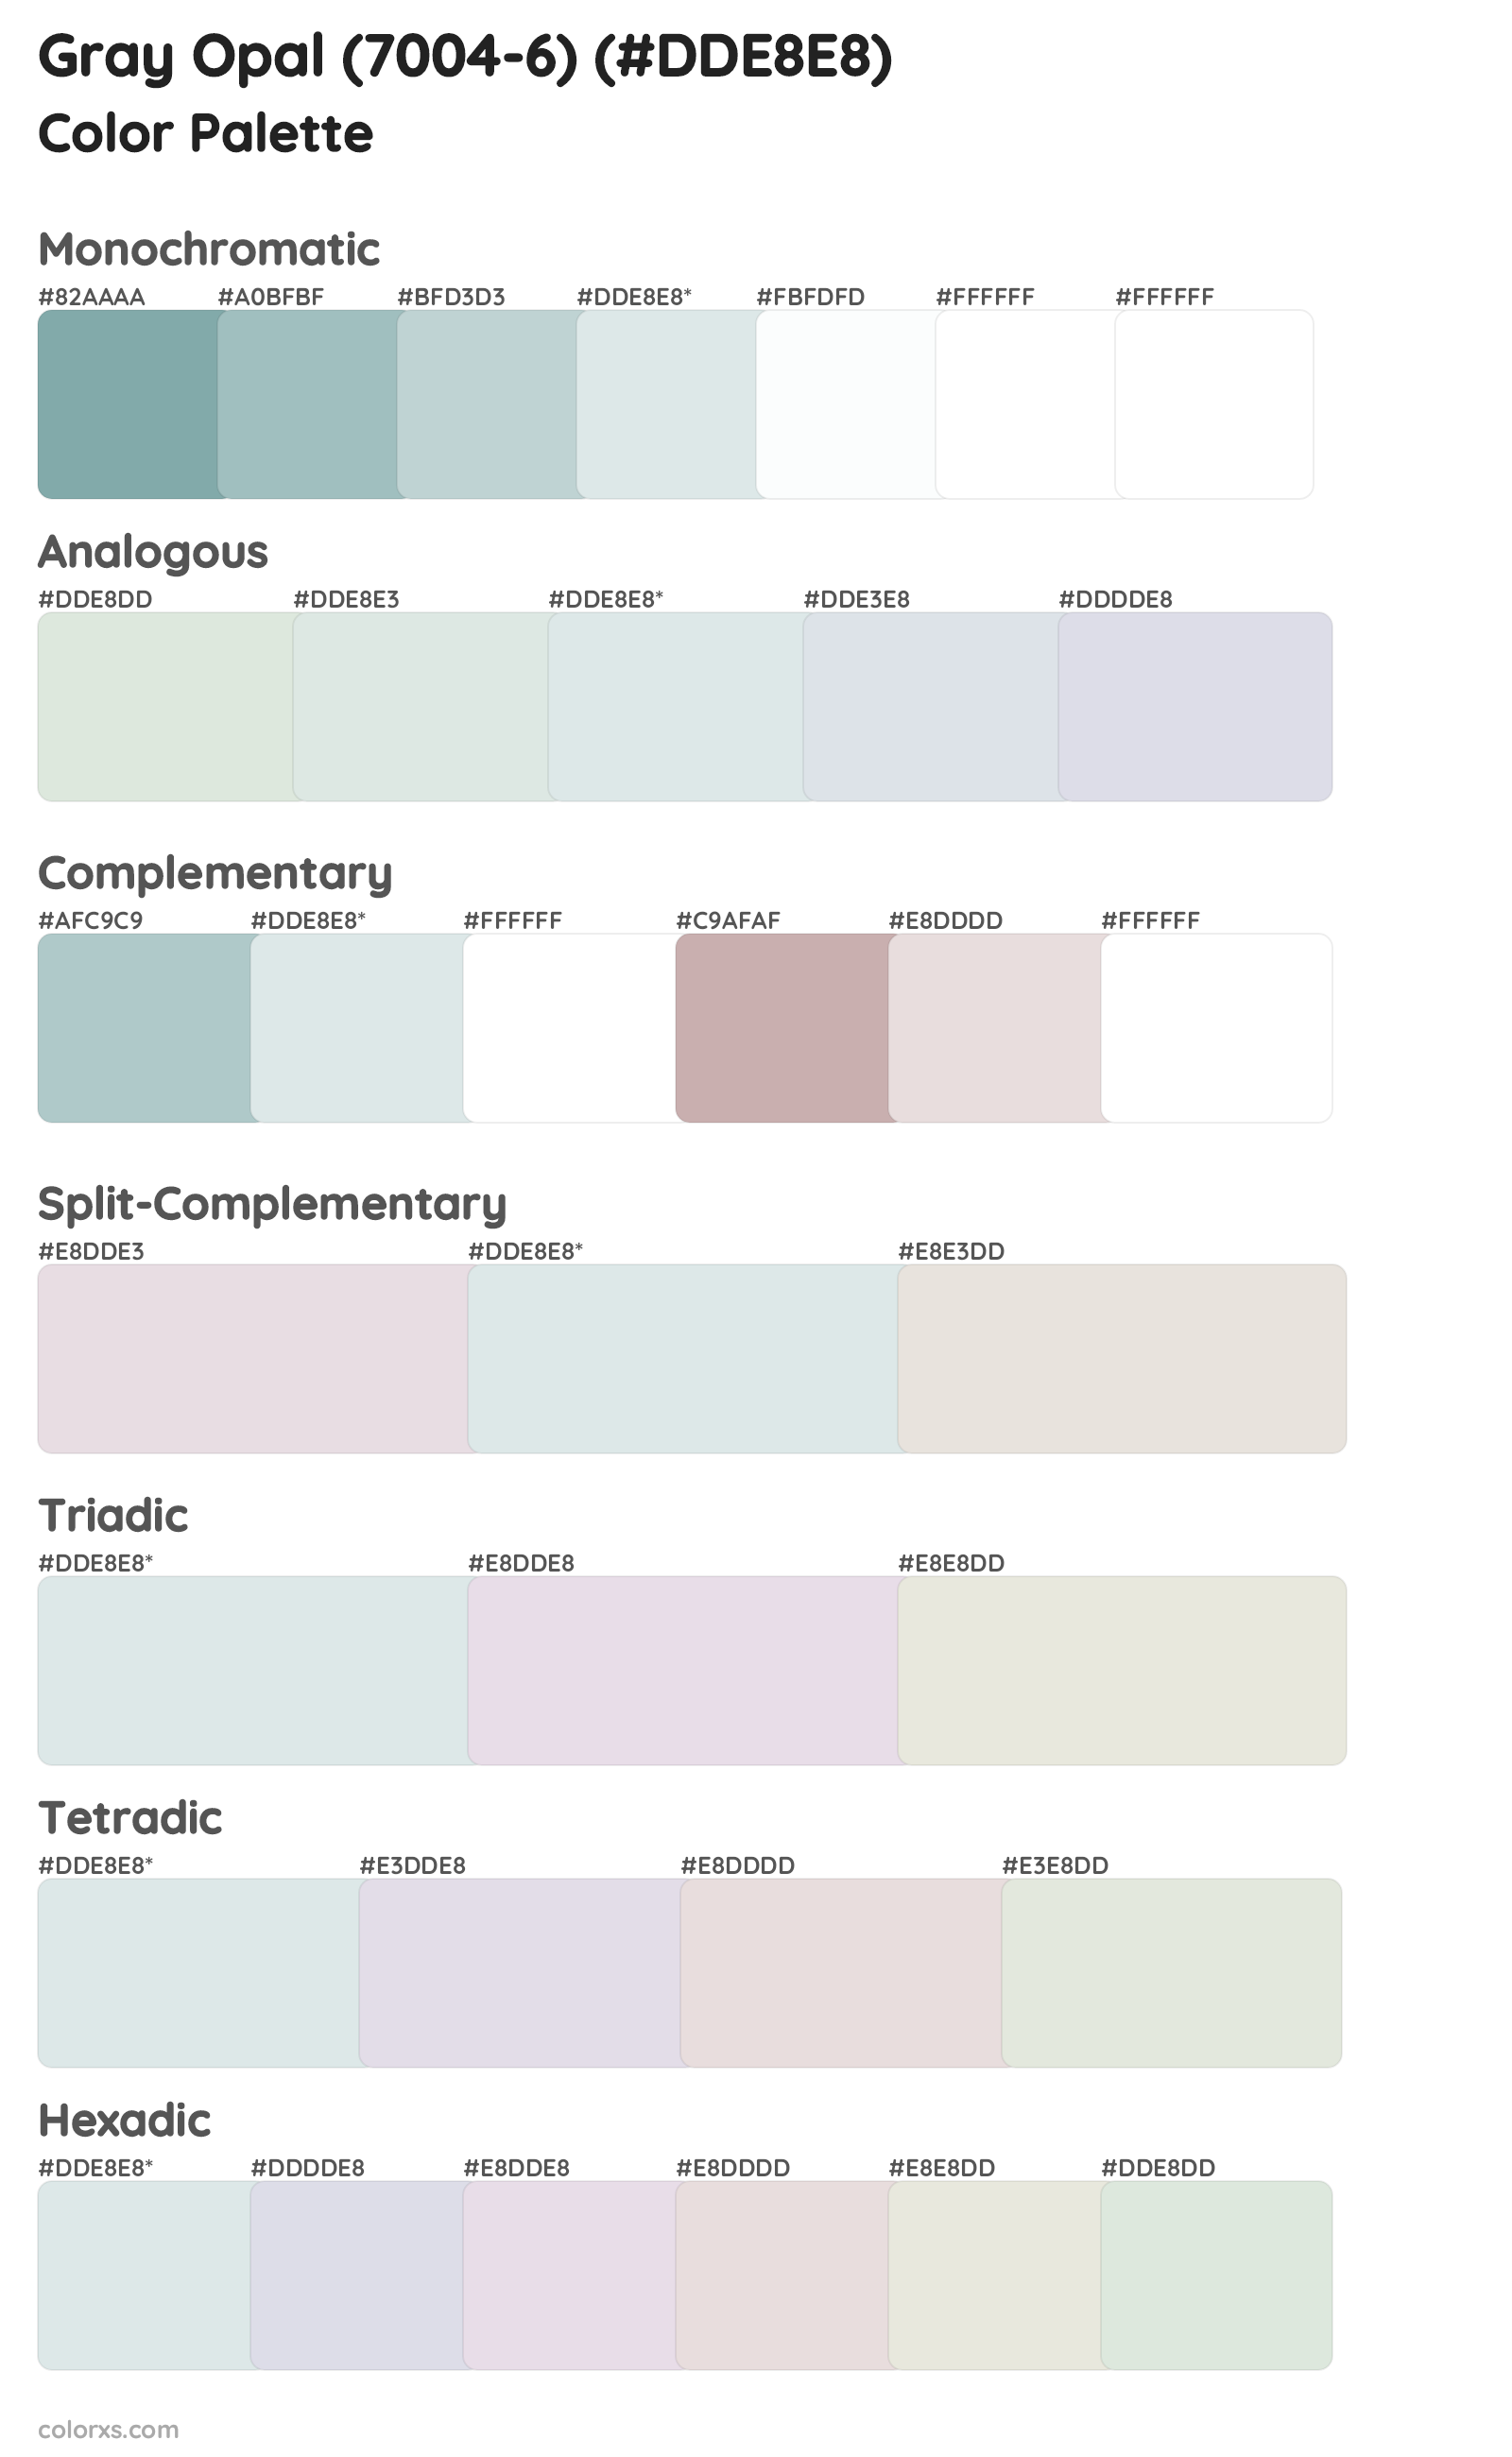 Gray Opal (7004-6) Color Scheme Palettes